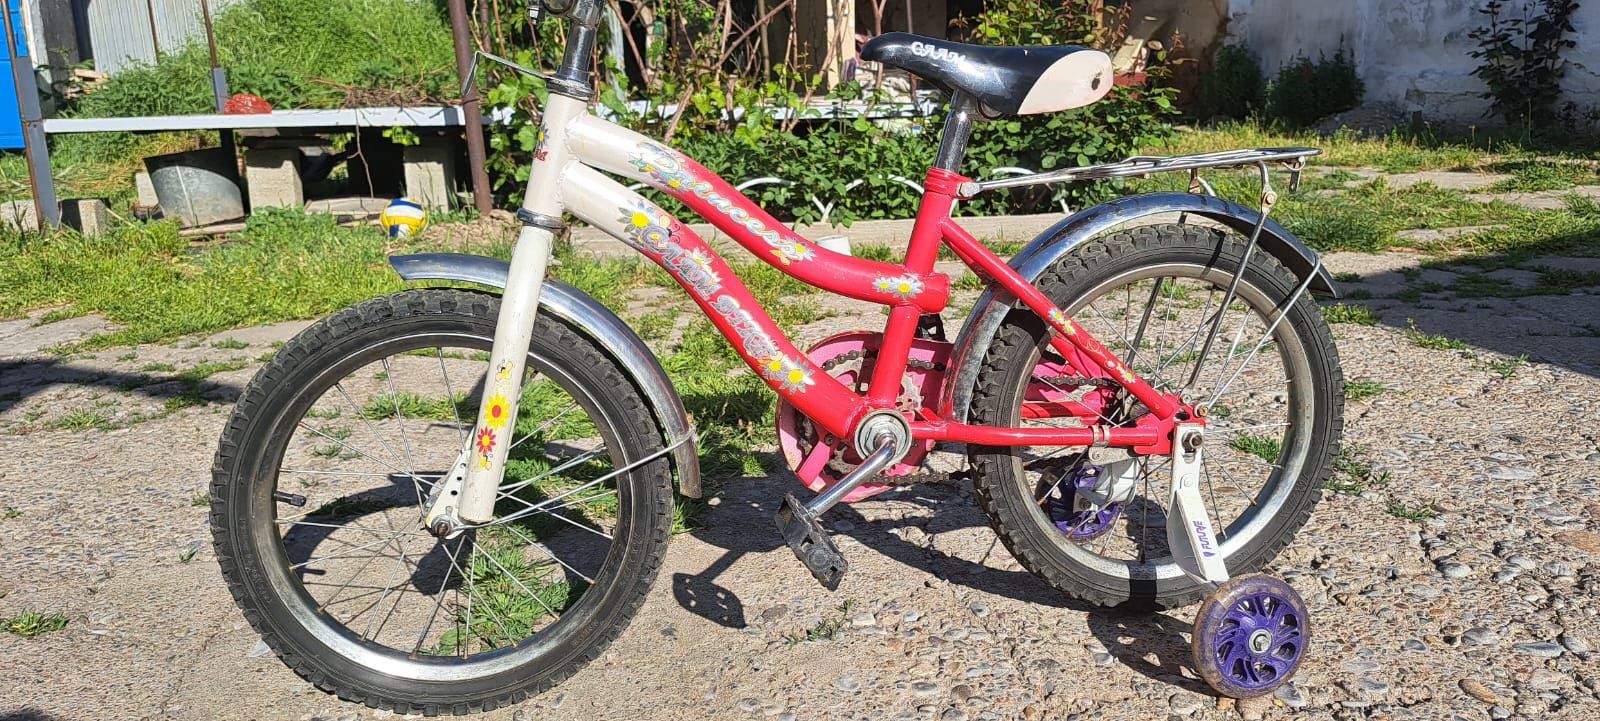 Велосипед Детский колёса Р16 в Идеальном состоянии находу